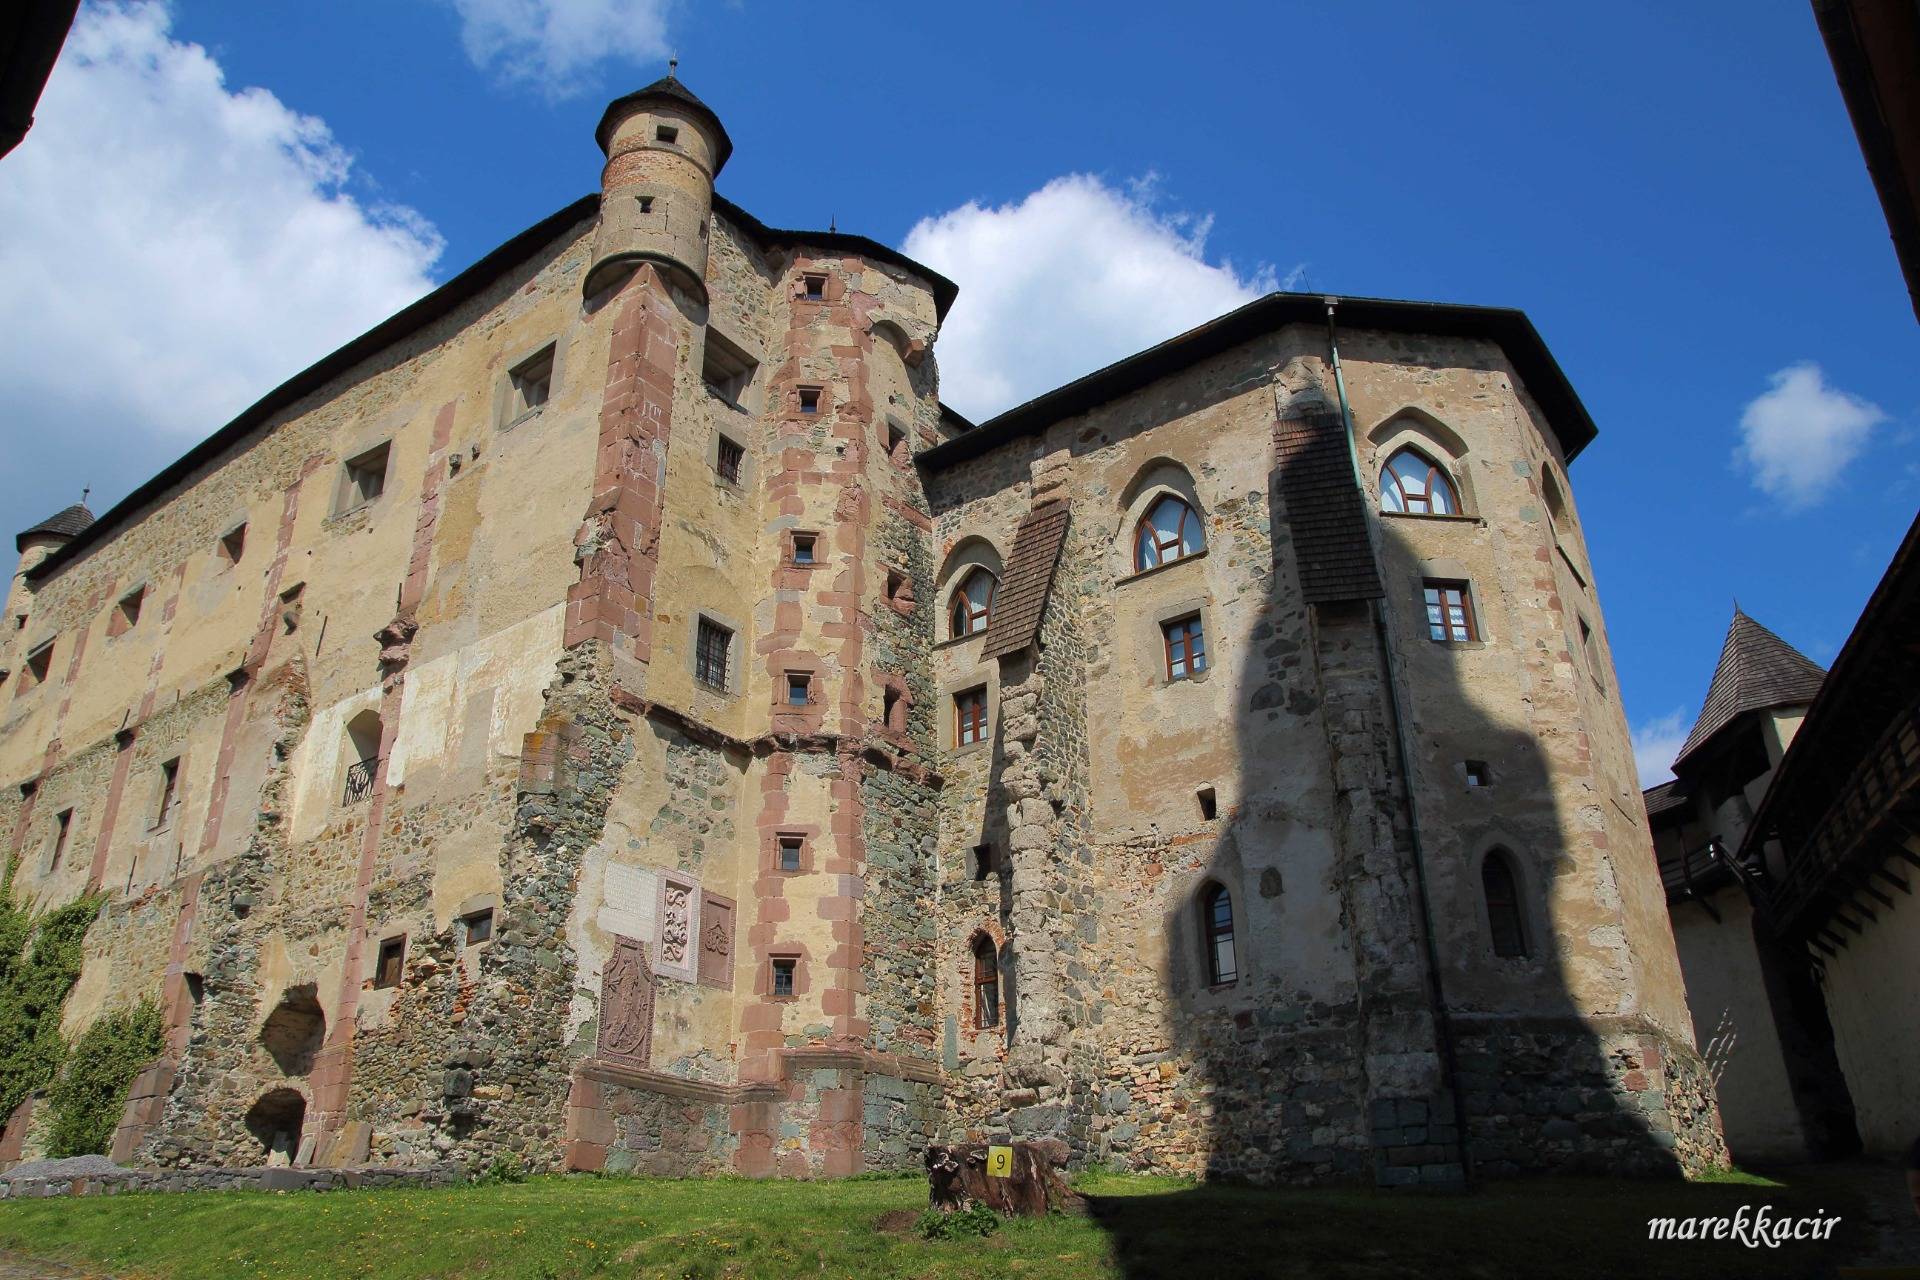 Trip to Old Castle in Banská Štiavnica